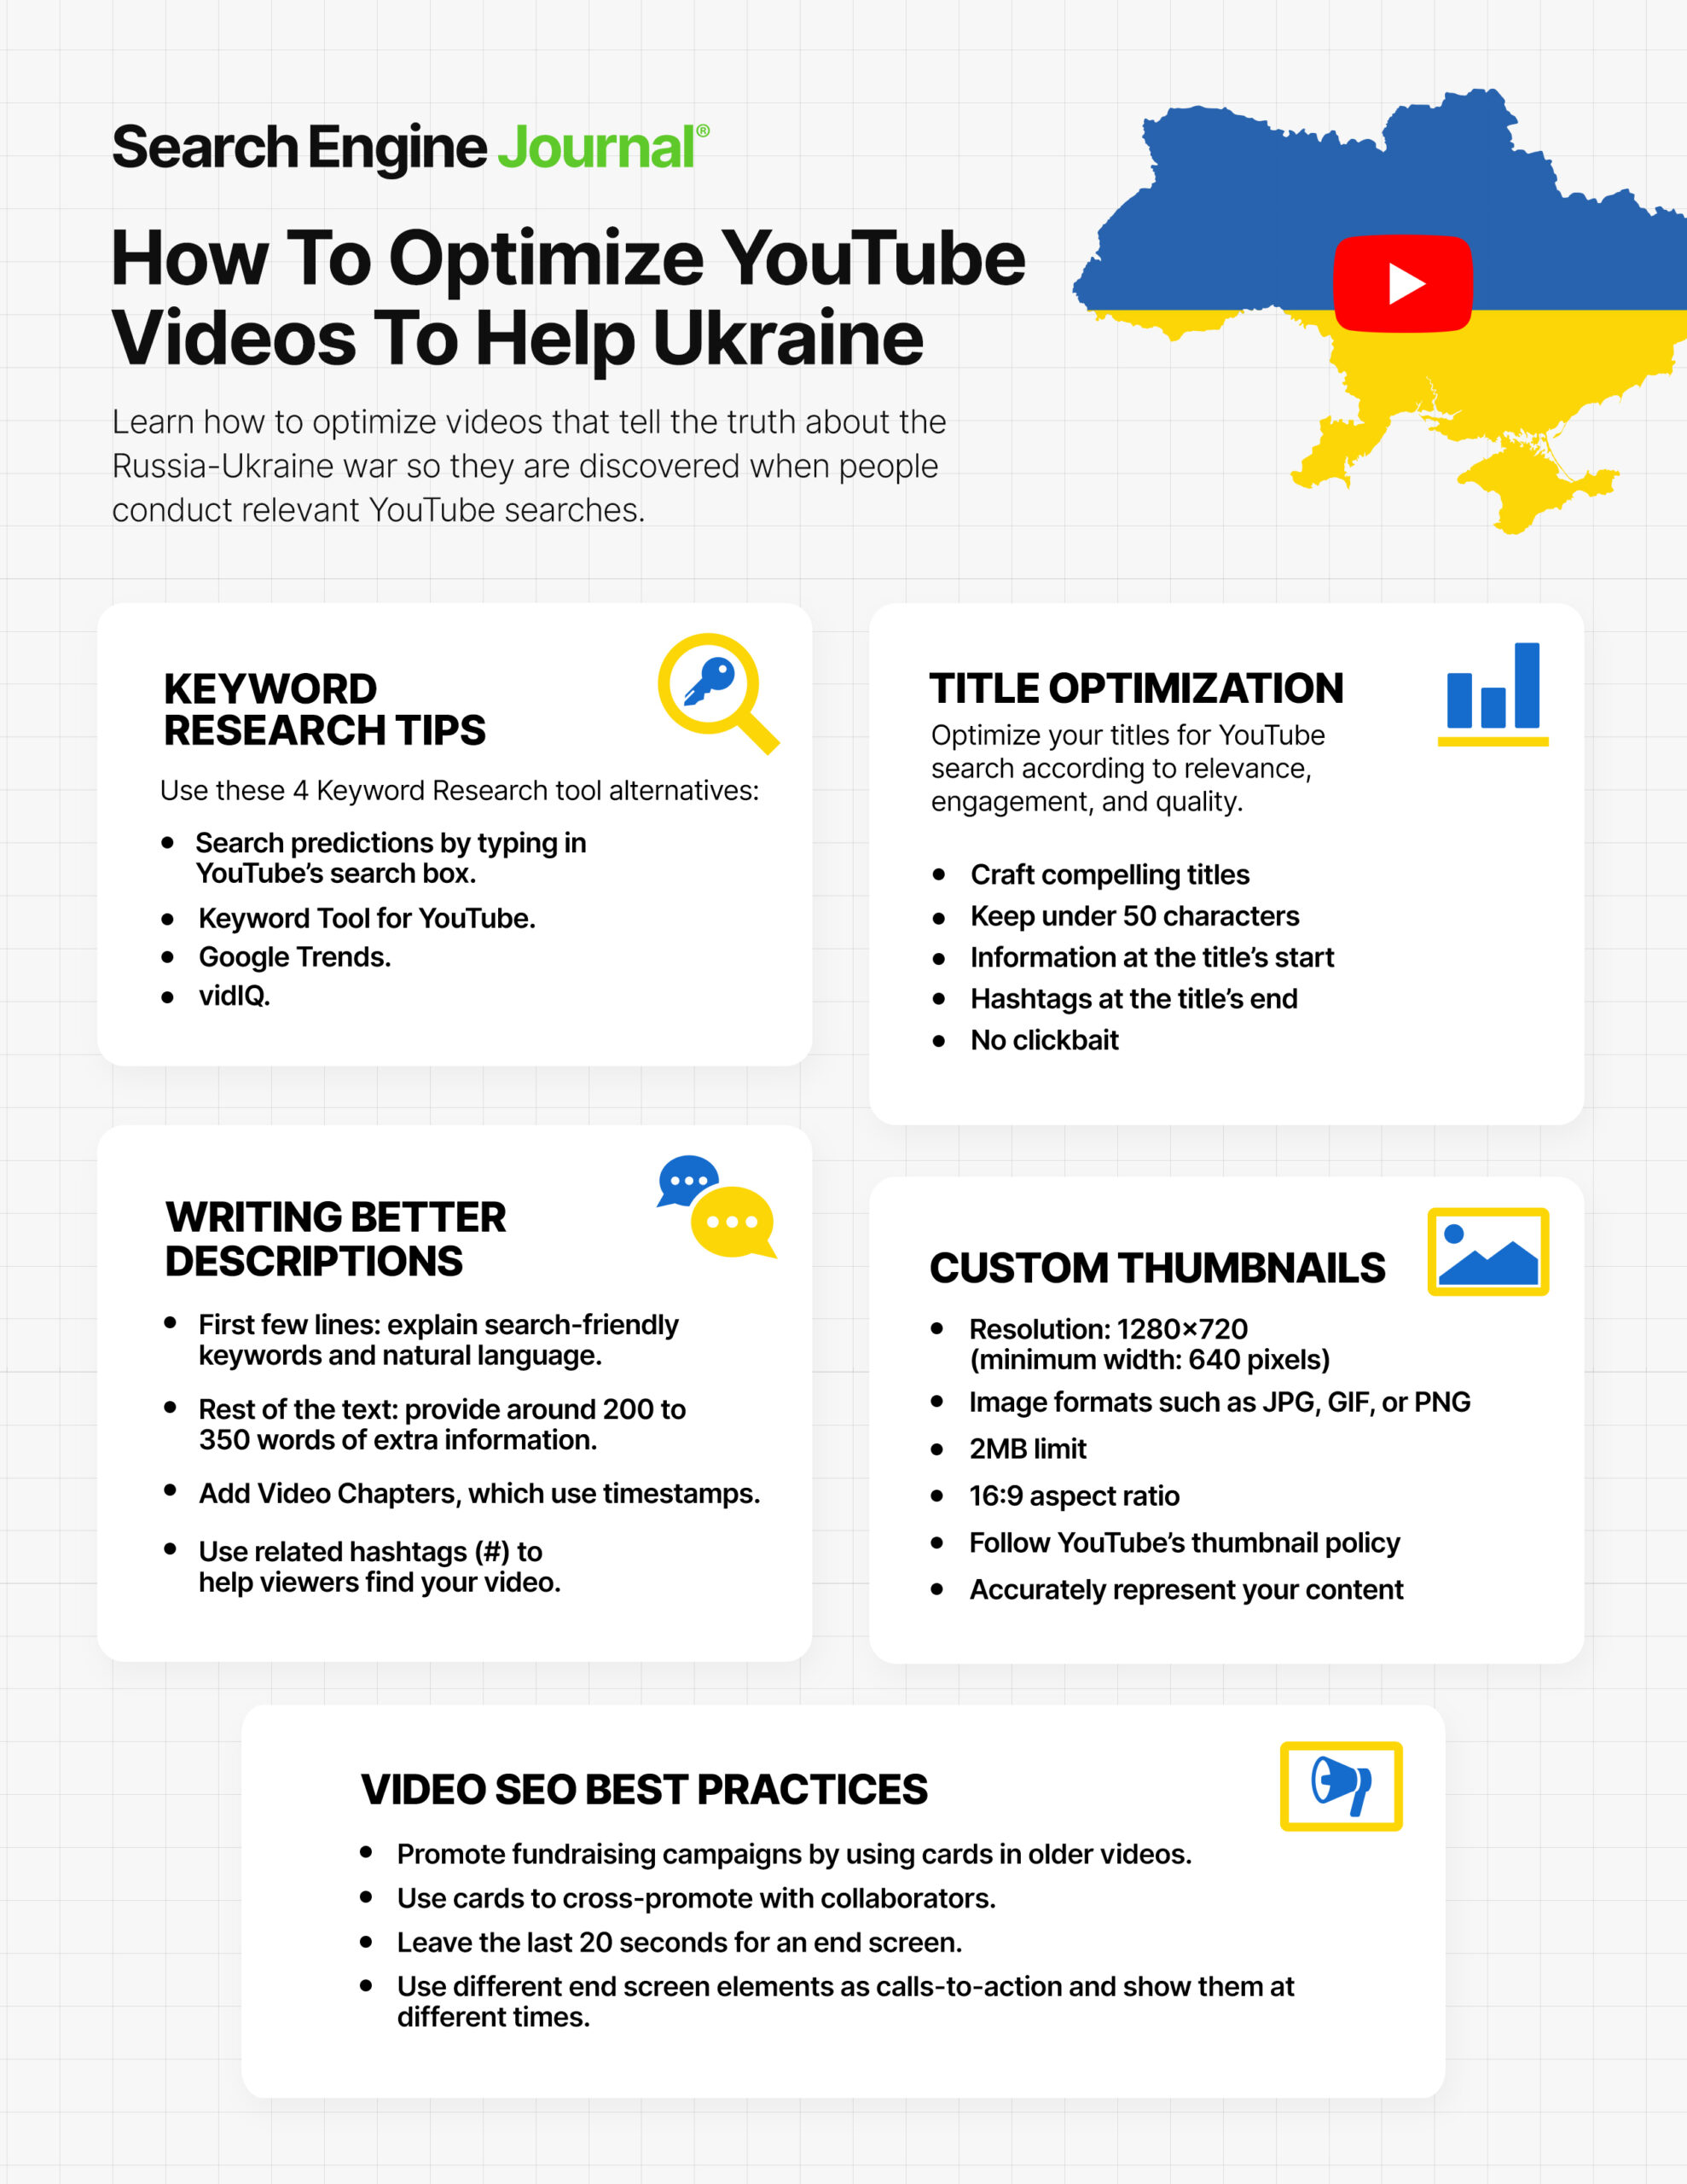 Cómo optimizar los videos de YouTube para apoyar a Ucrania.